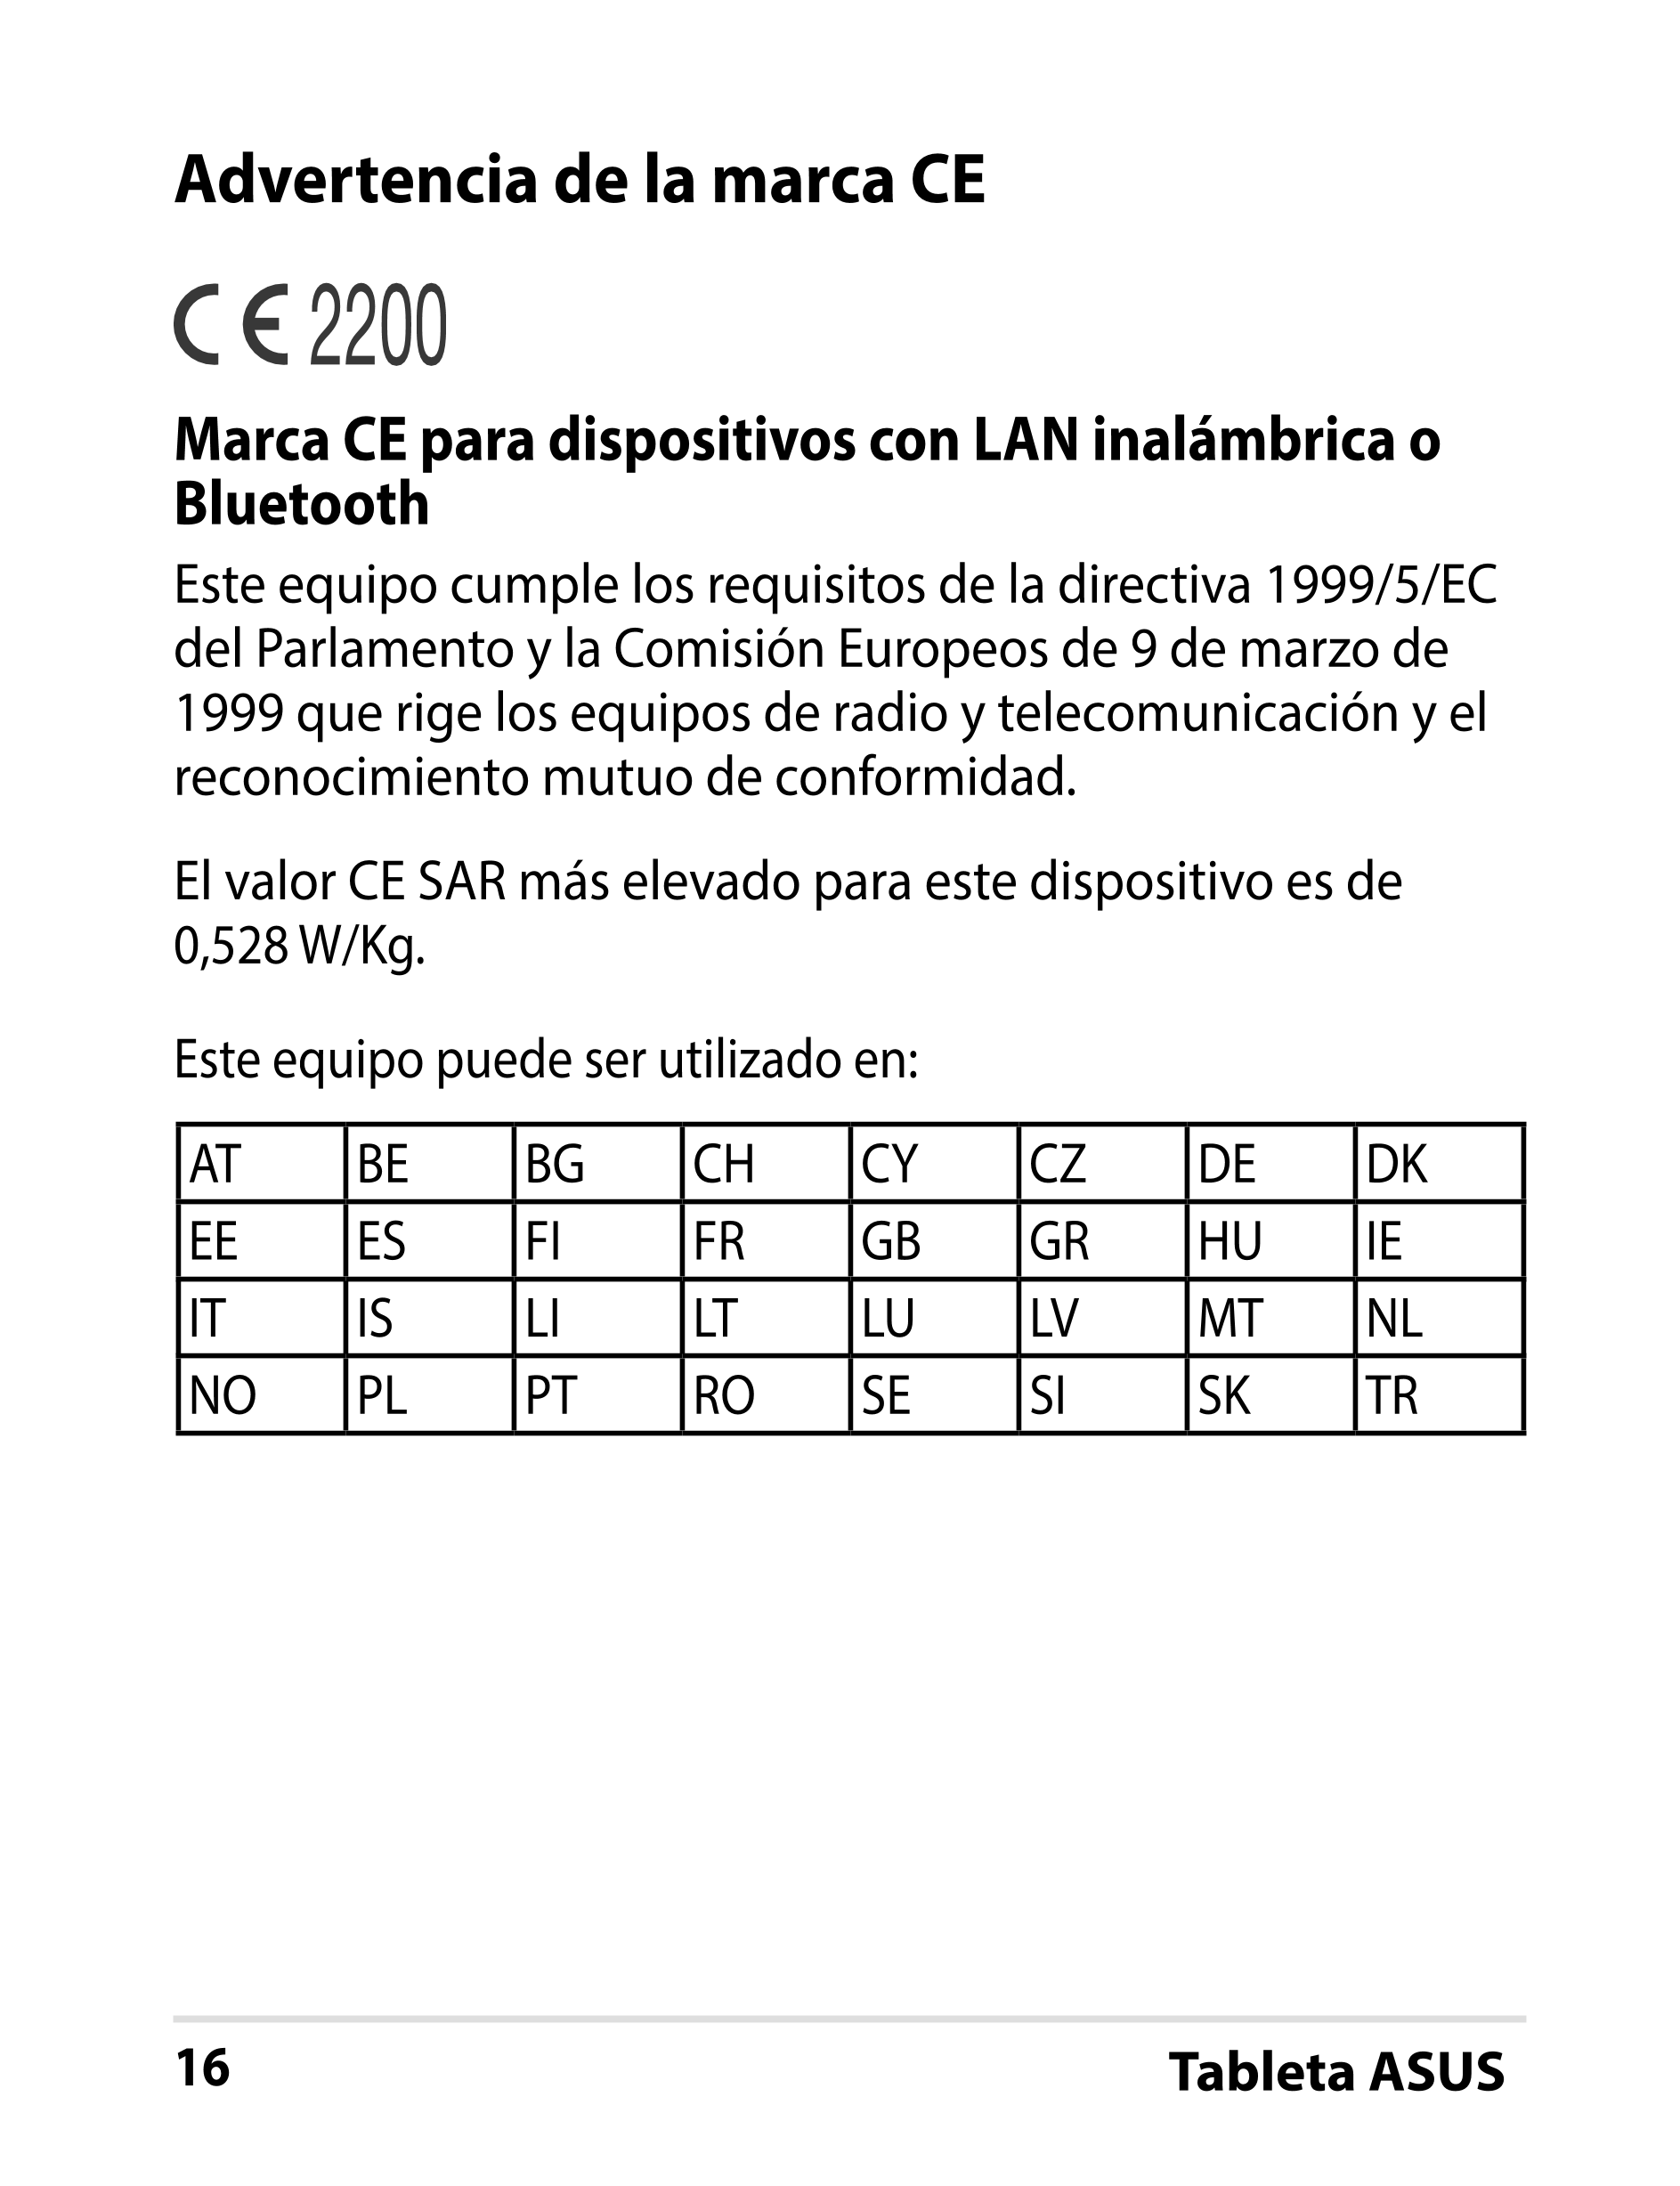 Advertencia de la marca CE
Marca CE para dispositivos con LAN inalámbrica o 
Bluetooth
Este equipo cumple los requisitos de la d